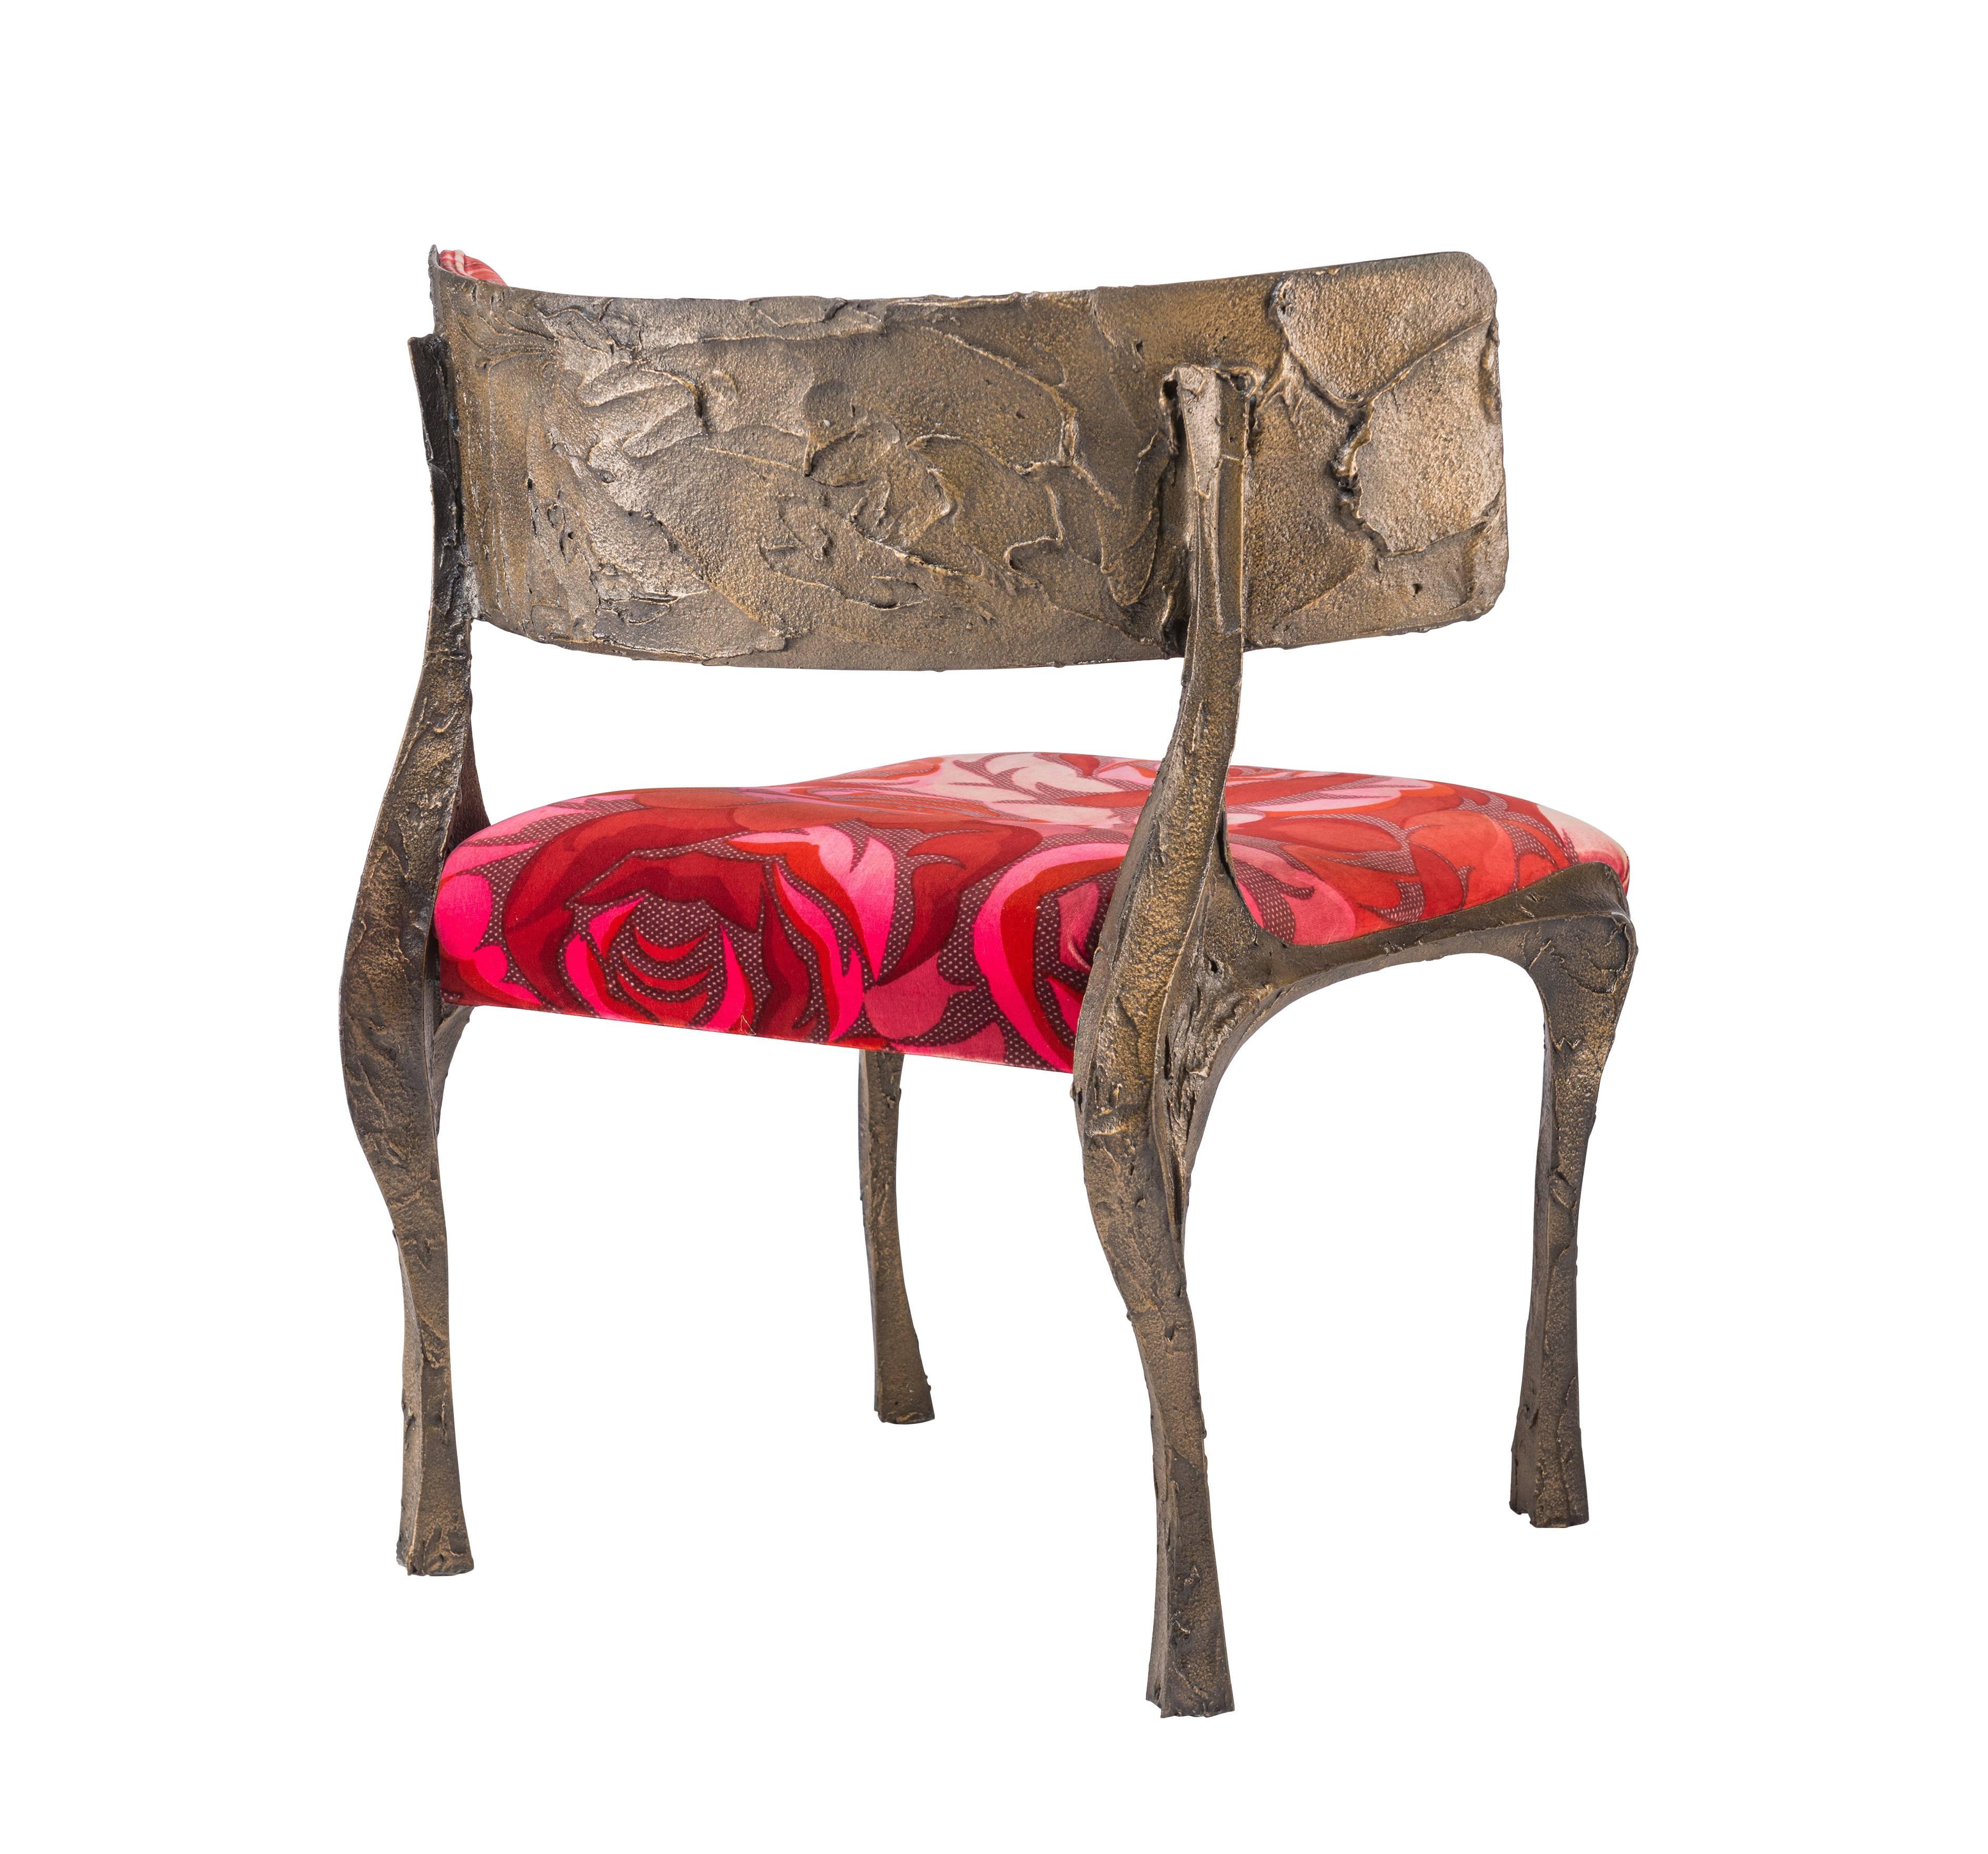 Rare Paul Evans sculptured metal lounge chair, model PE 117, in original Jack Lenore Larsen fabric. Wear to original fabric.